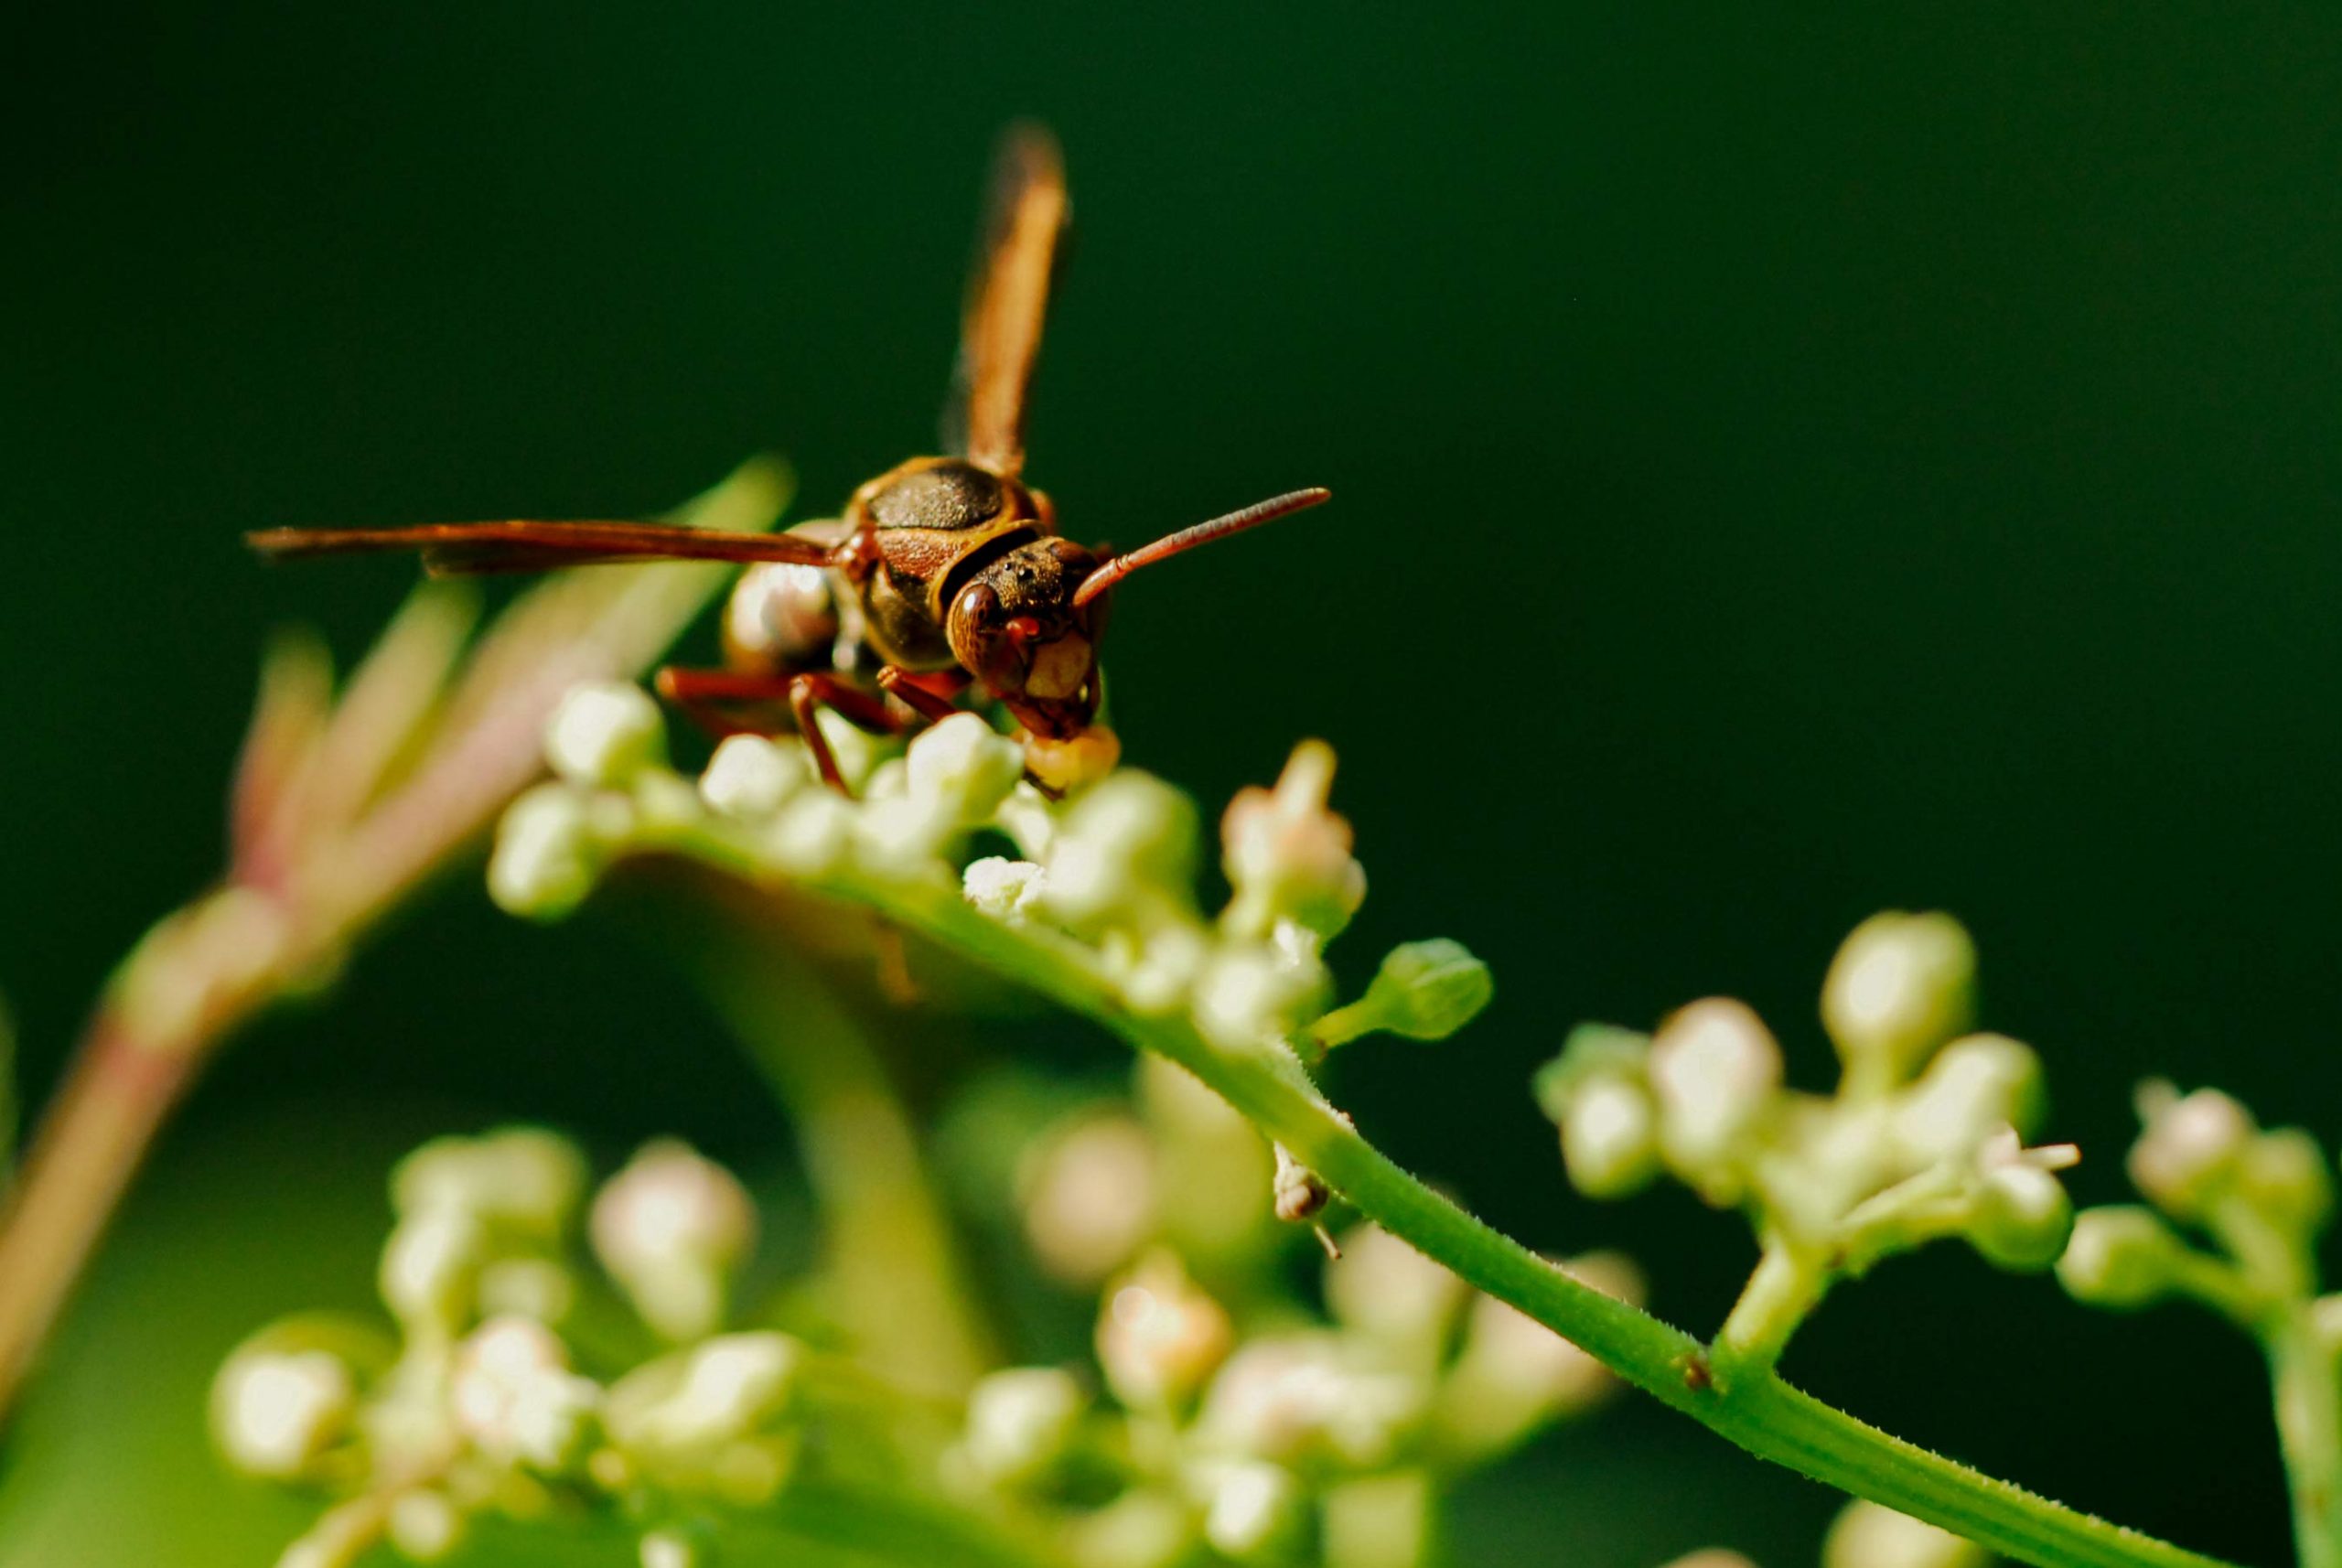 キボシアシナガバチの写真